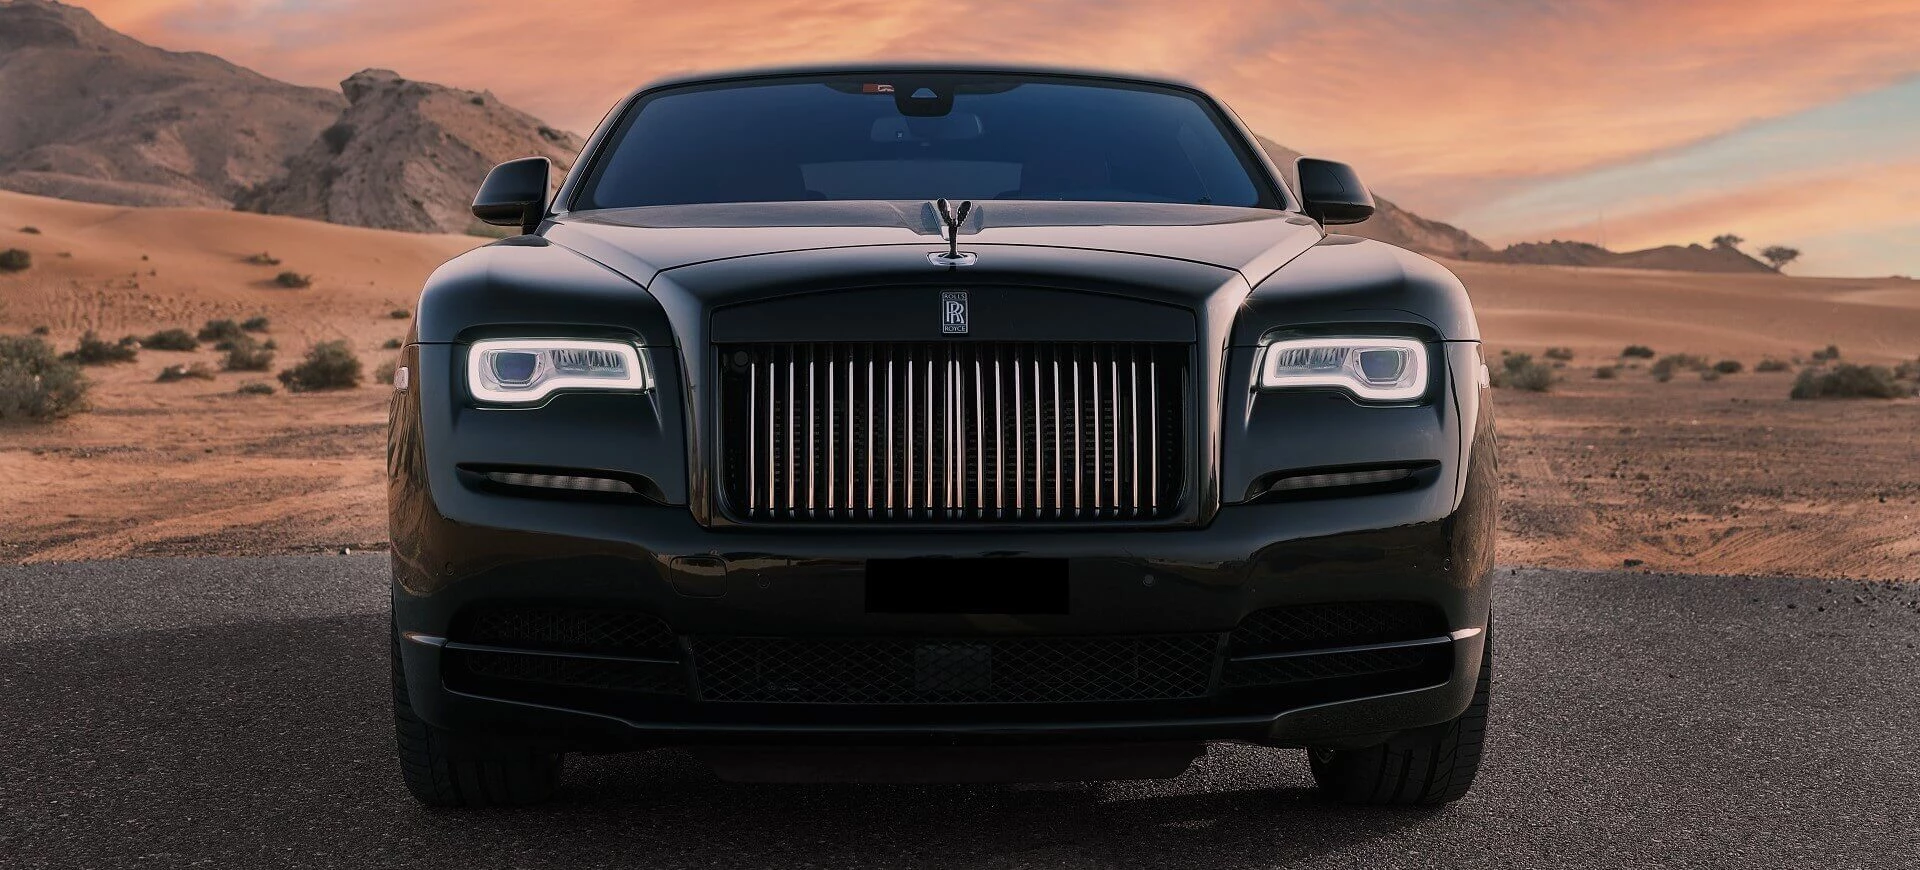 Noleggio Rolls Royce Wraith a Dubai